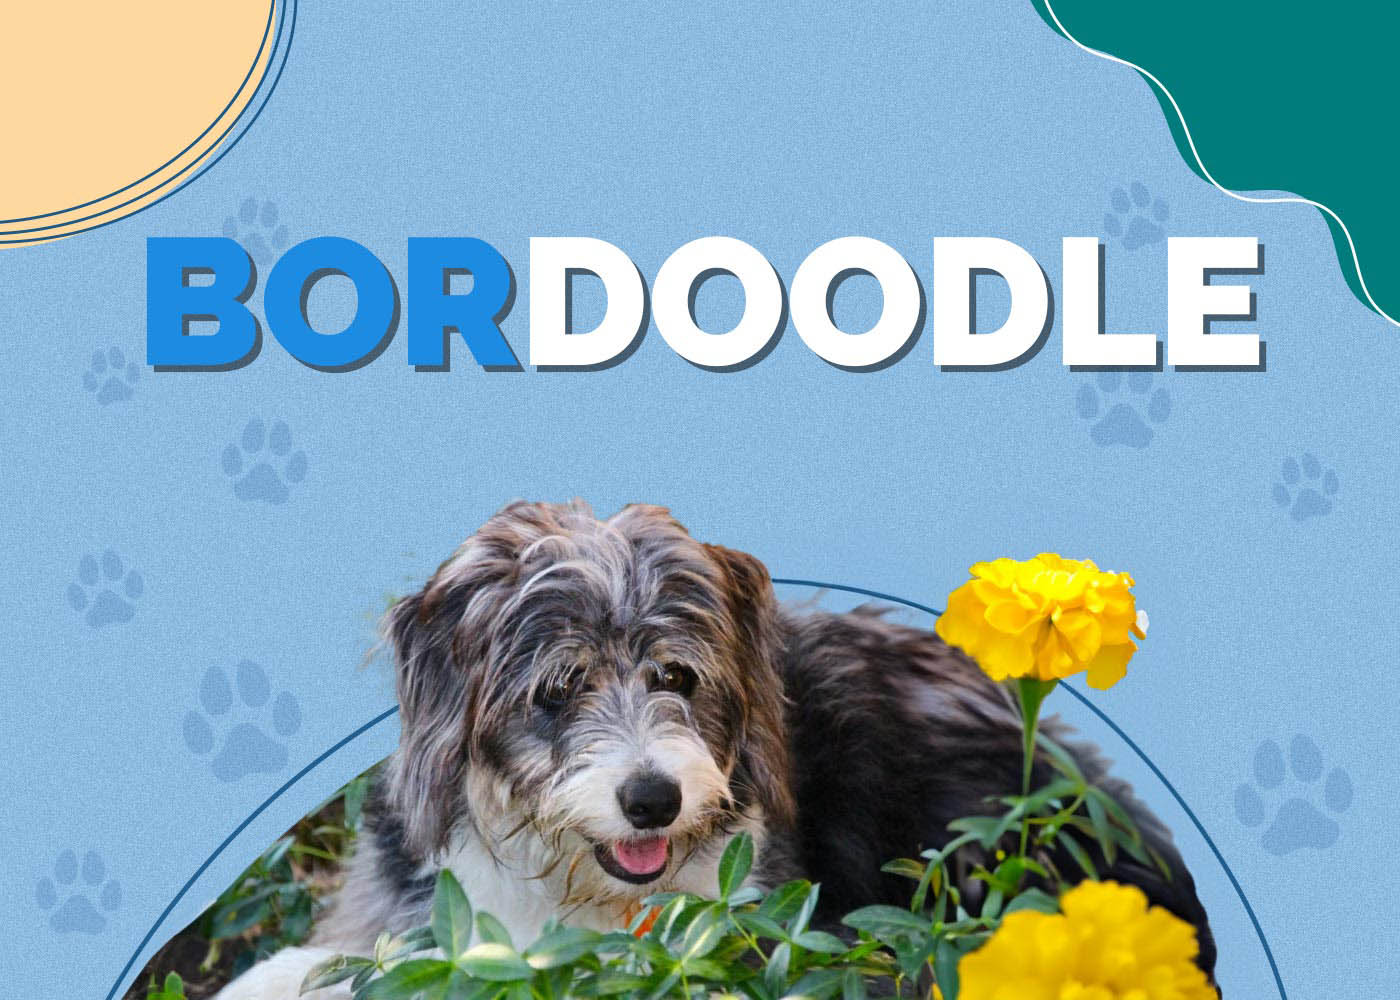 Bordoodle (Border Collie & Poodle Mix)